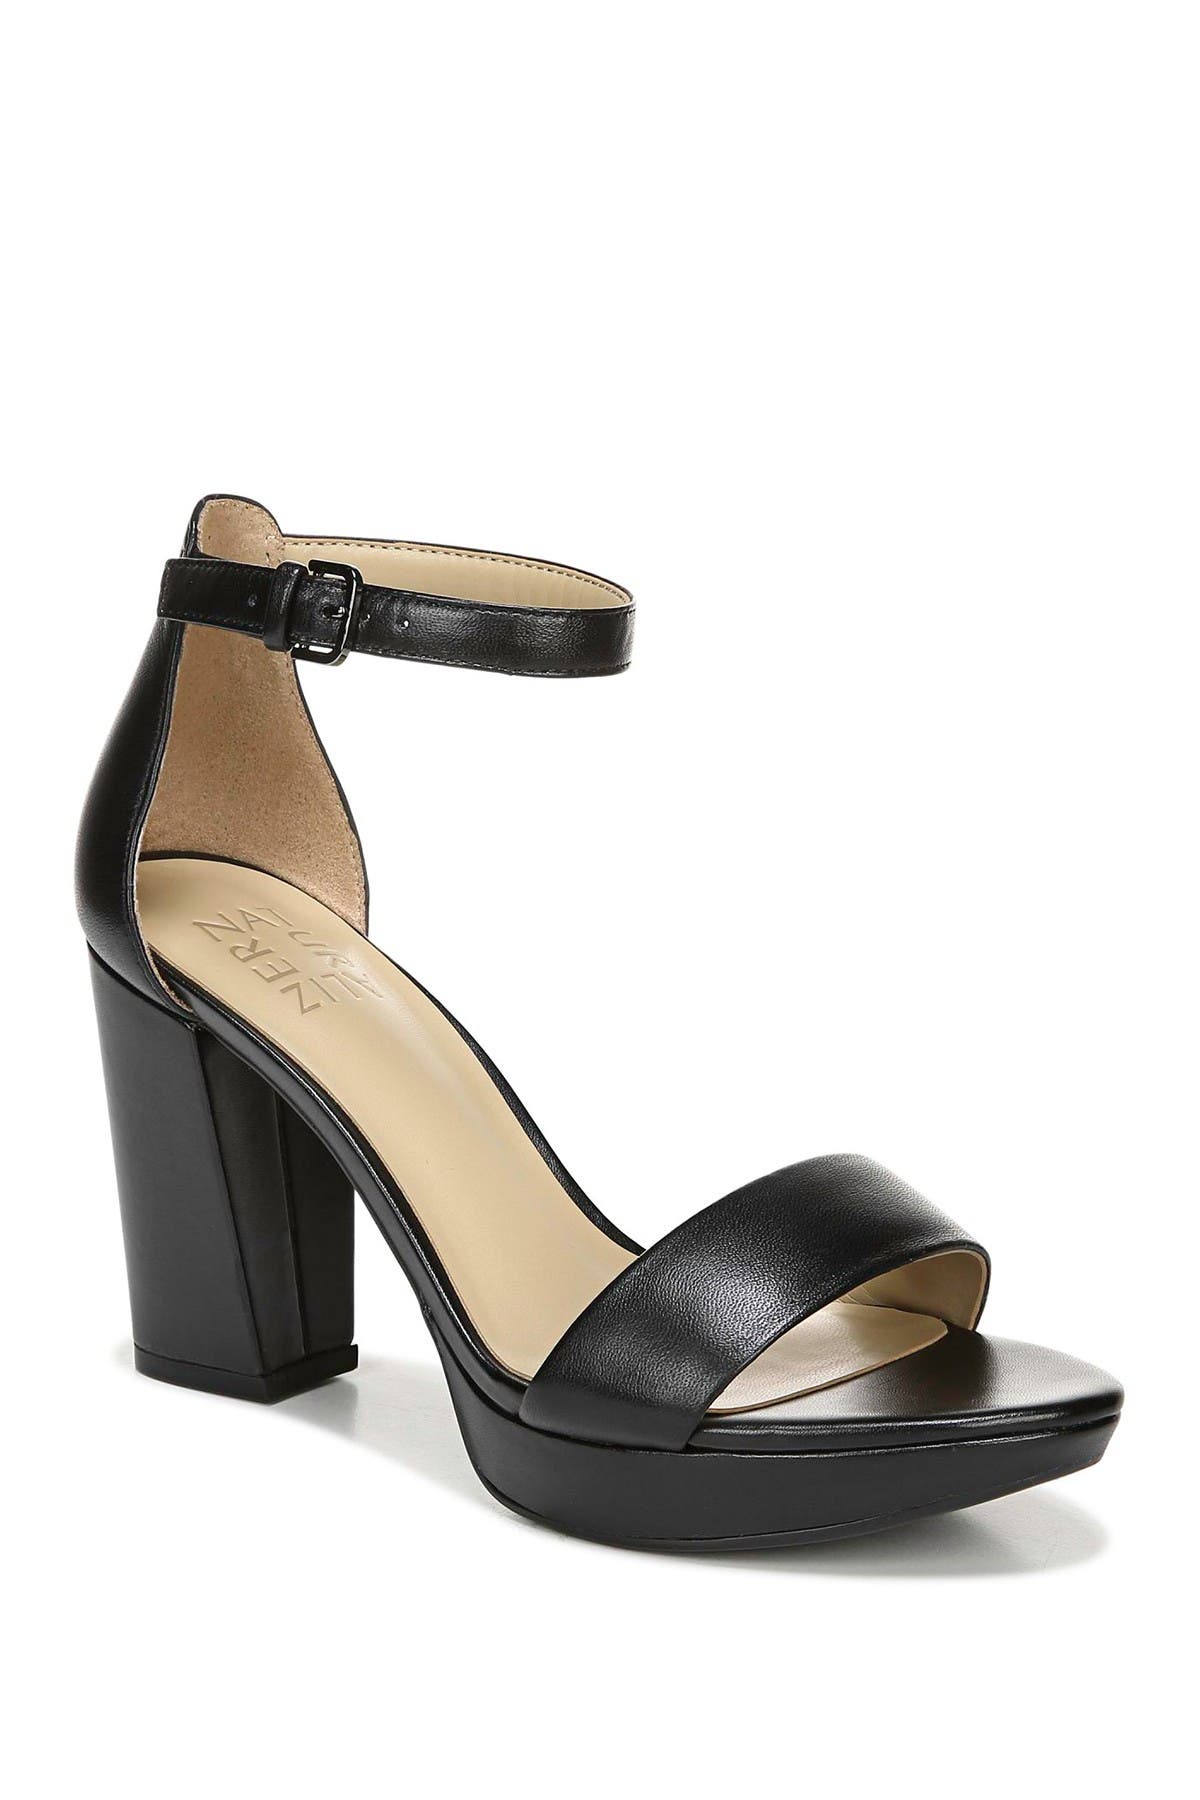 ankle strap heels wide width